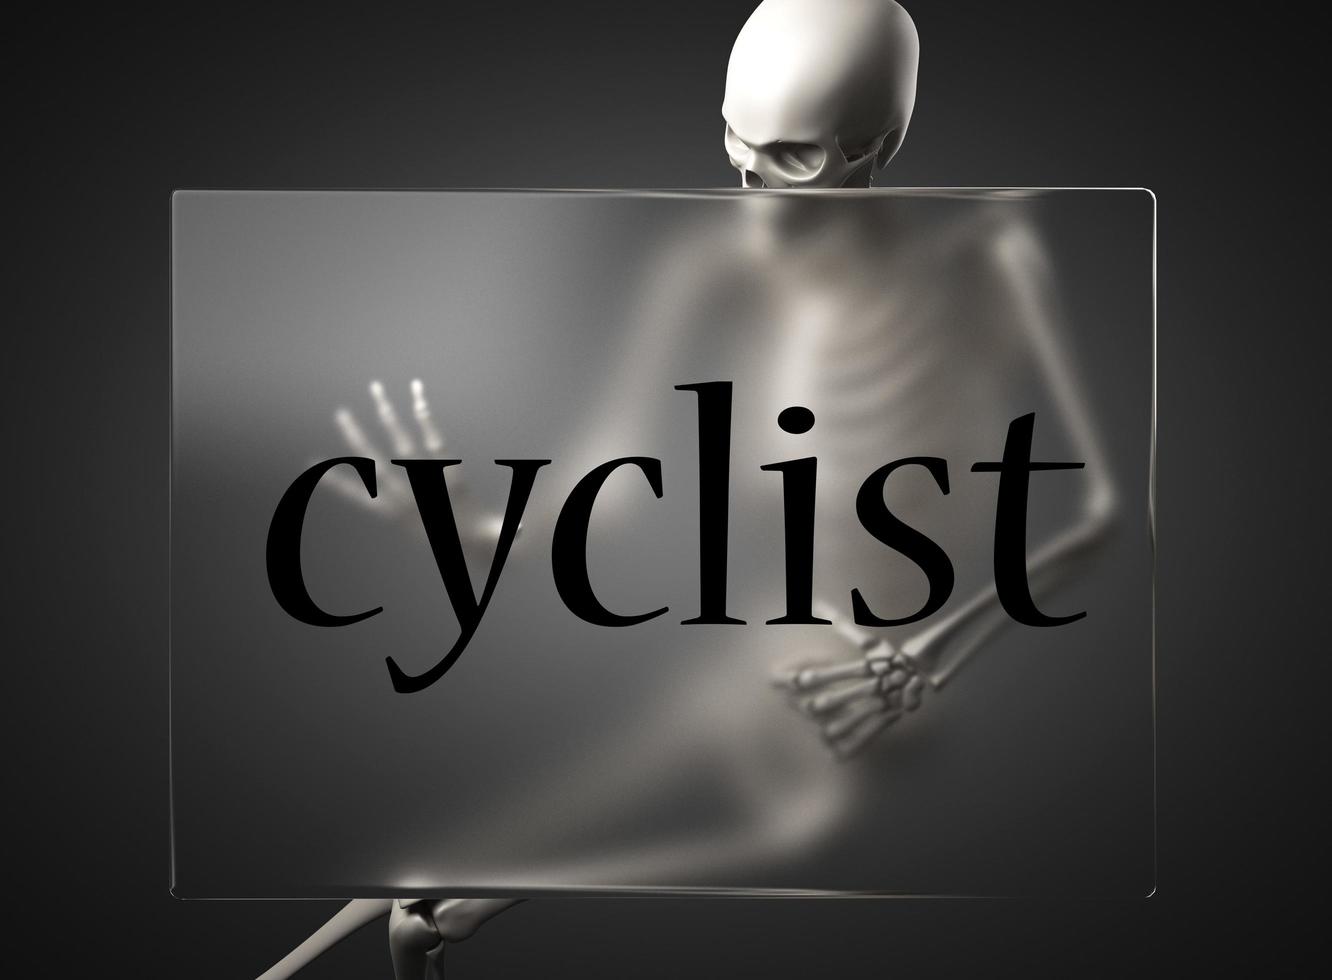 mot cycliste sur verre et squelette photo